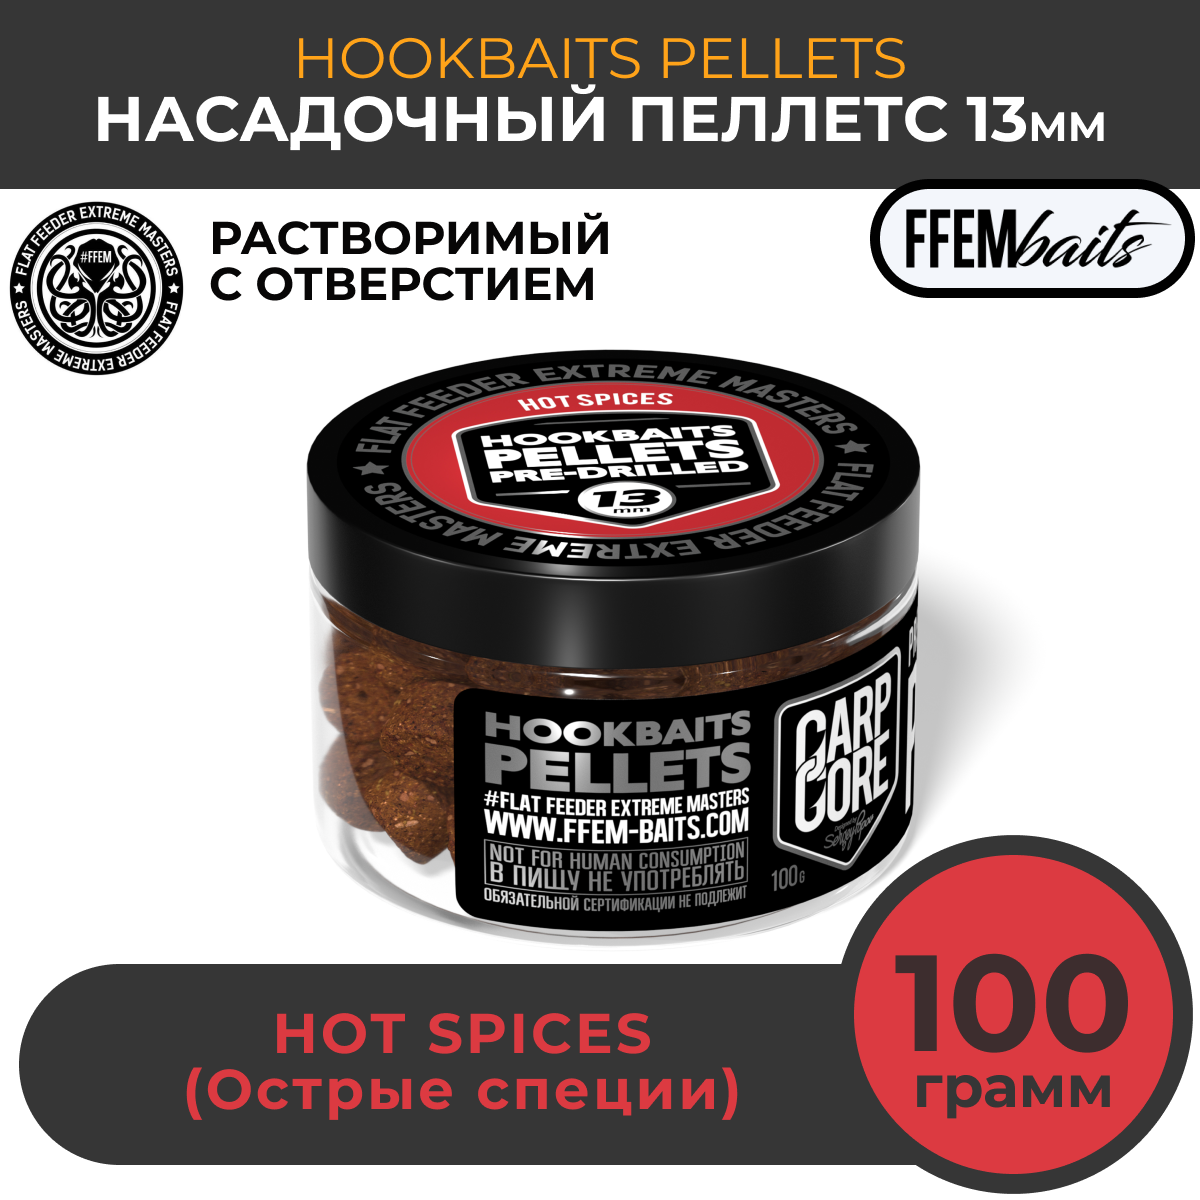 Насадочный пеллетс FFEM Hookbaits Pellets Hot Spices 13mm Острые специи 100г / Растворимый пеллетс с отверстием 13 мм